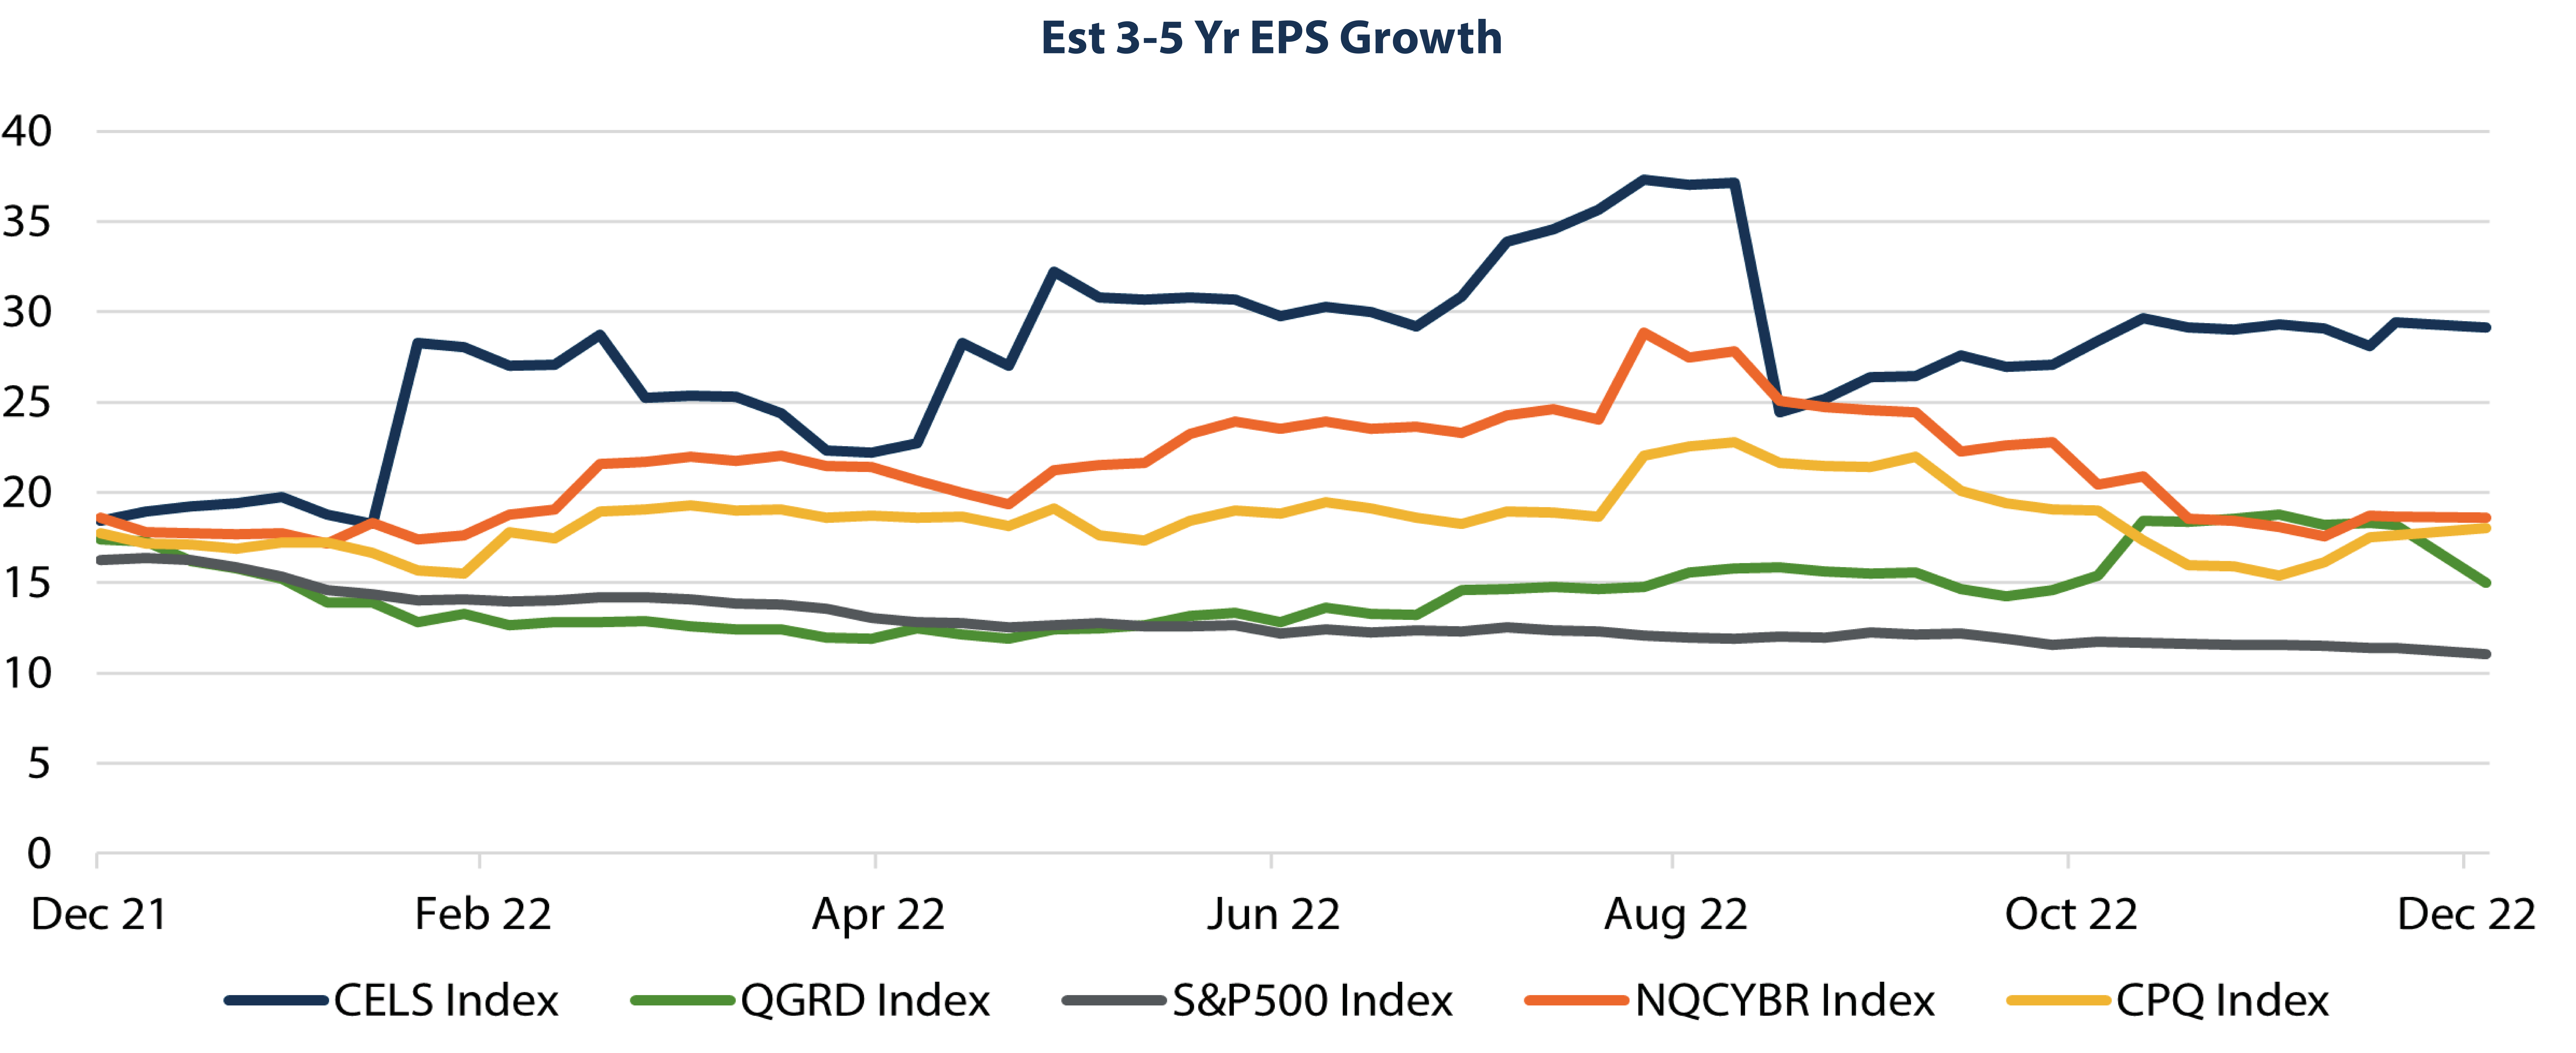 EST 3-5 Yr EPS Growth